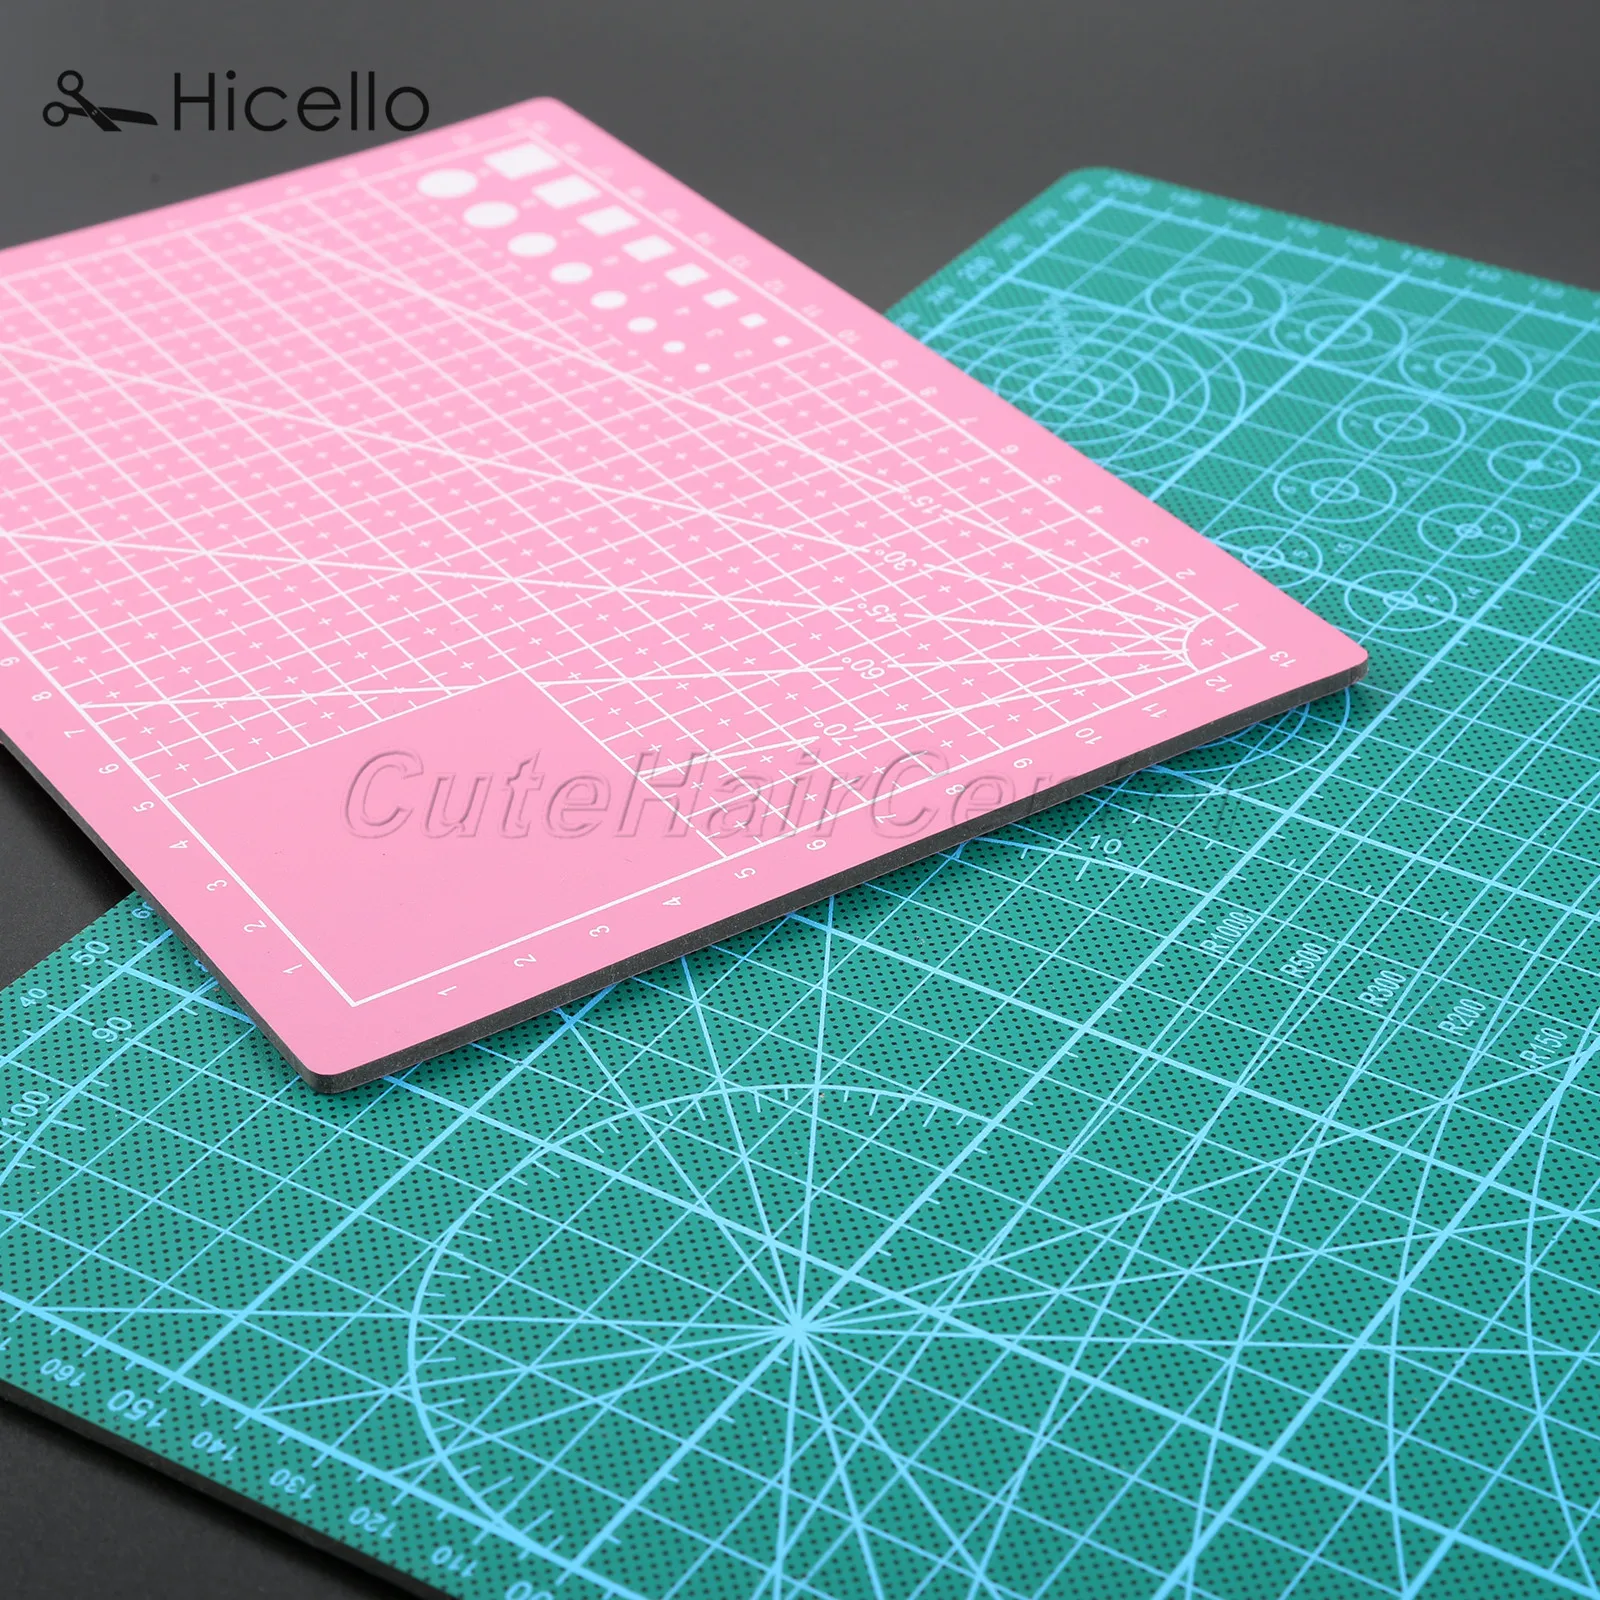 A4/A5 коврик для шитья разделочная доска ПВХ коврик со шкалой и сеткой для рисования профессиональные инструменты Hicello